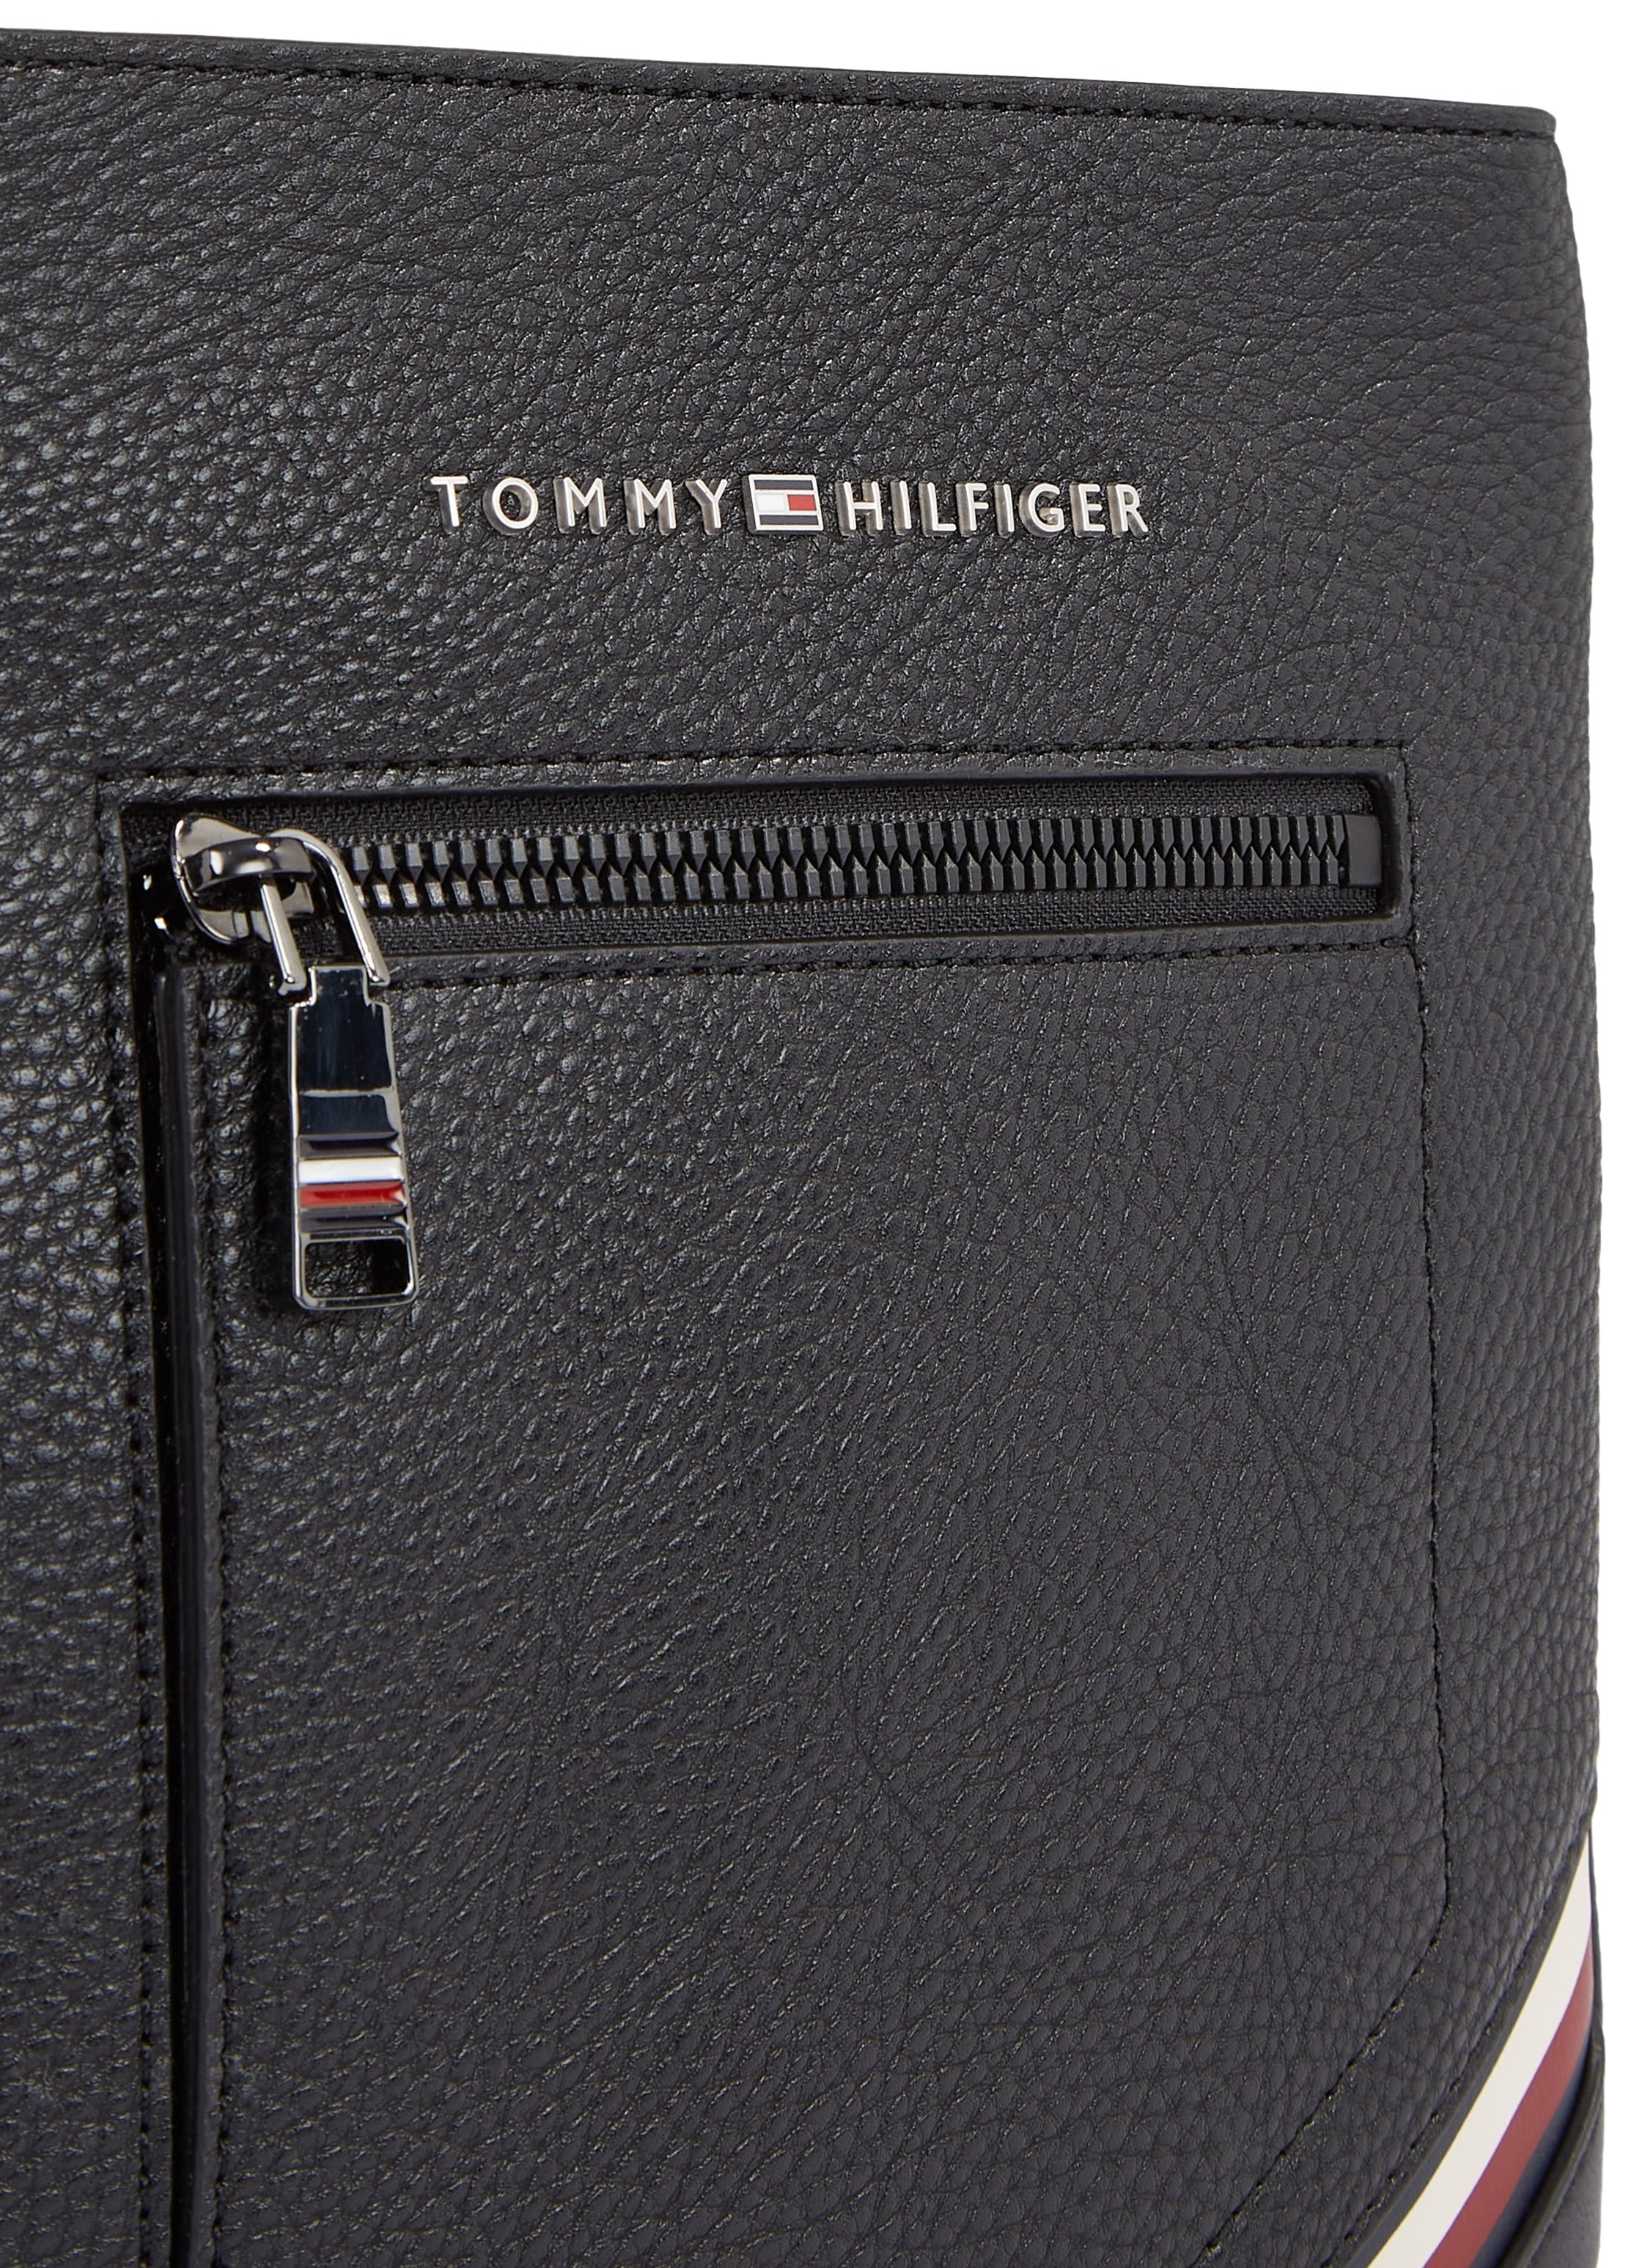 Hilfiger online BAUR Bag kaufen CROSSOVER«, Design »TH Mini MINI Tommy | praktischen CENTRAL im